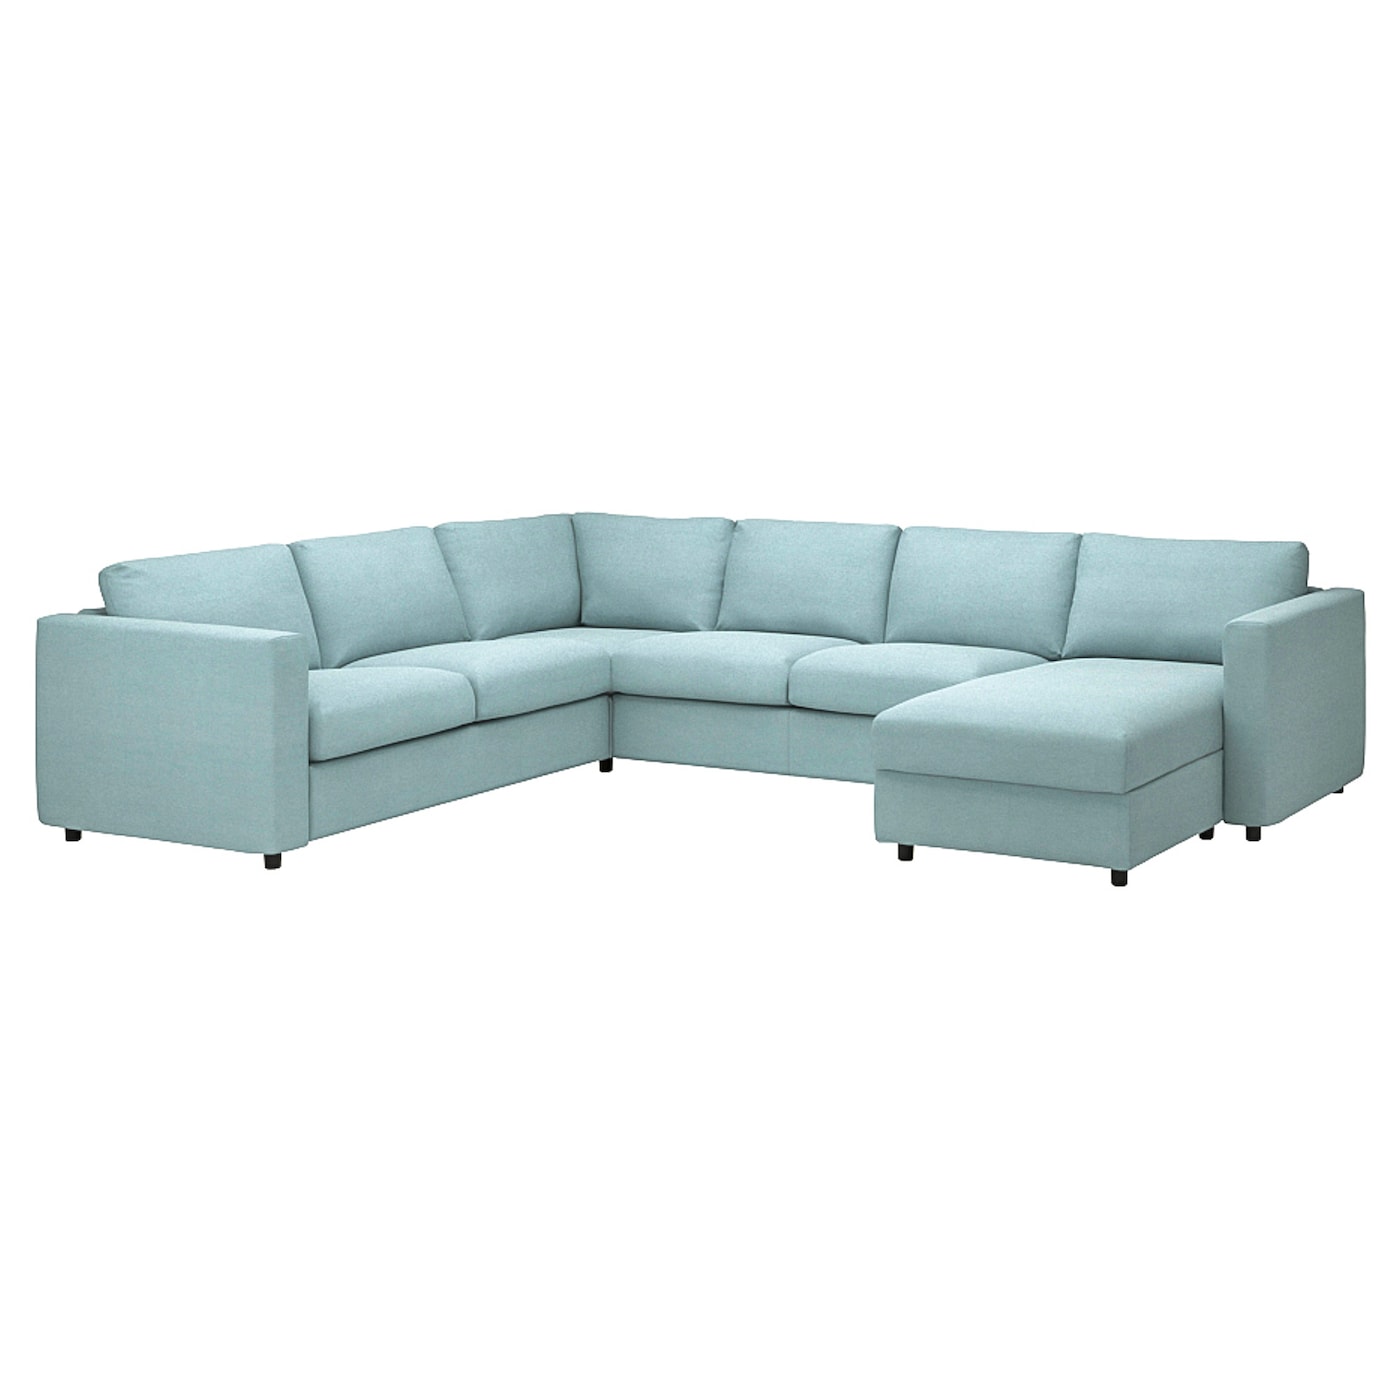 угловой диван флит ВИМЛЕ Диван угловой, 5-местный. диван+диван, с диваном/Saxemara светло-синий VIMLE IKEA